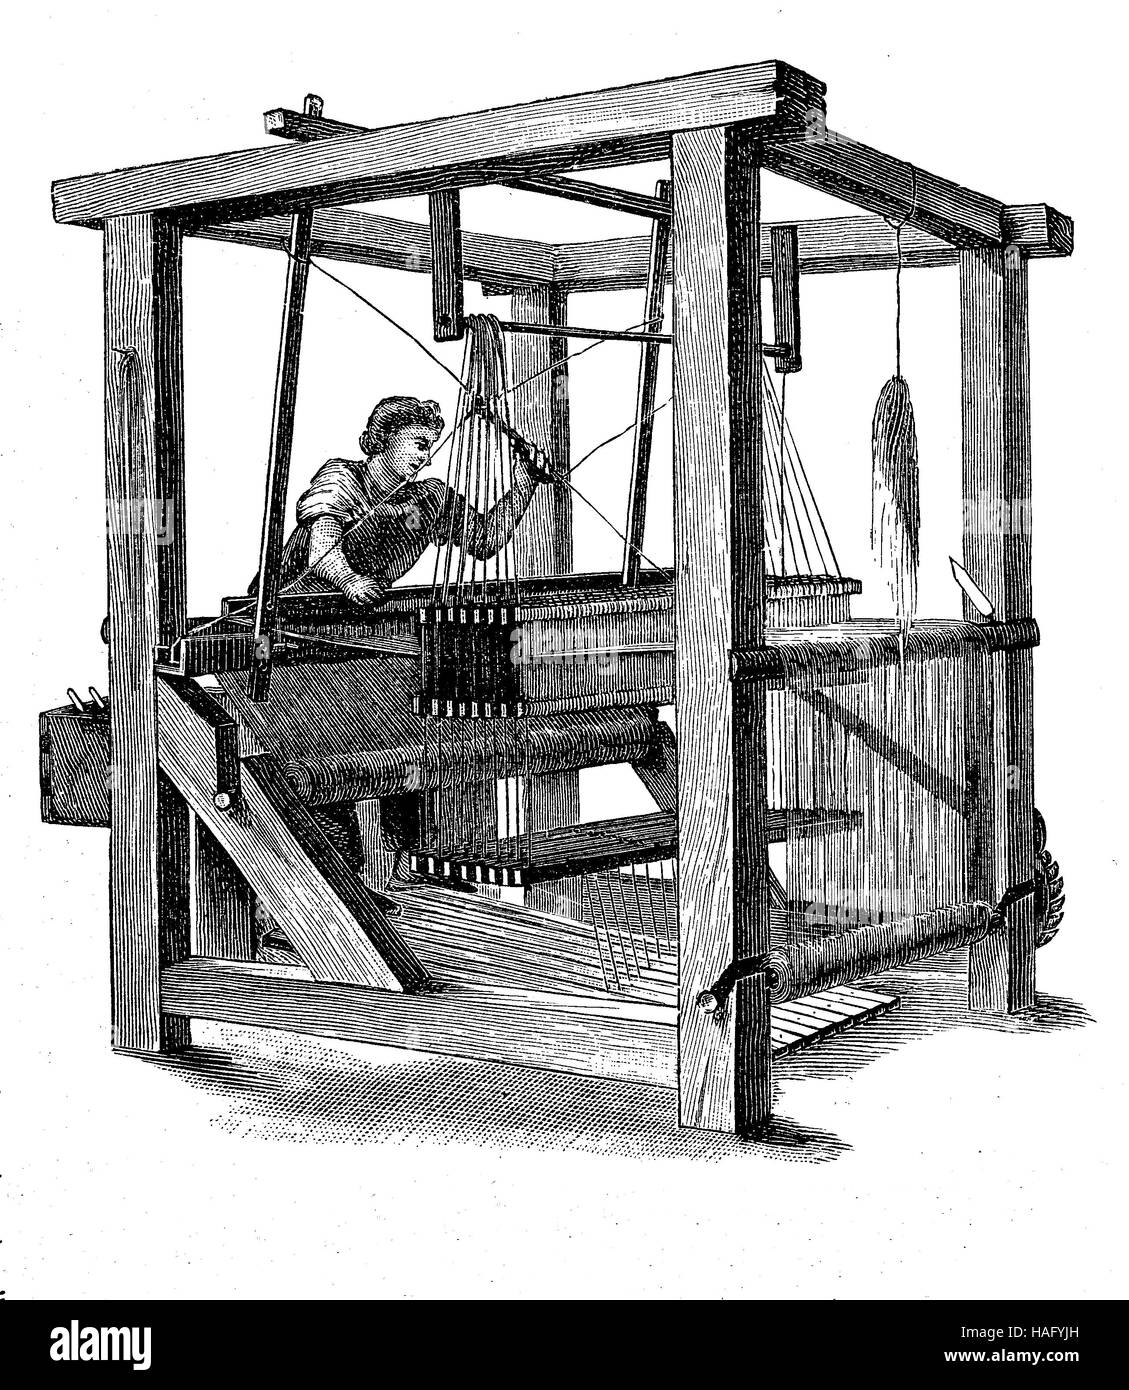 Un telaio, un dispositivo usato per tessere un panno e tappezzeria., xilografia a partire dall'anno 1880 Foto Stock